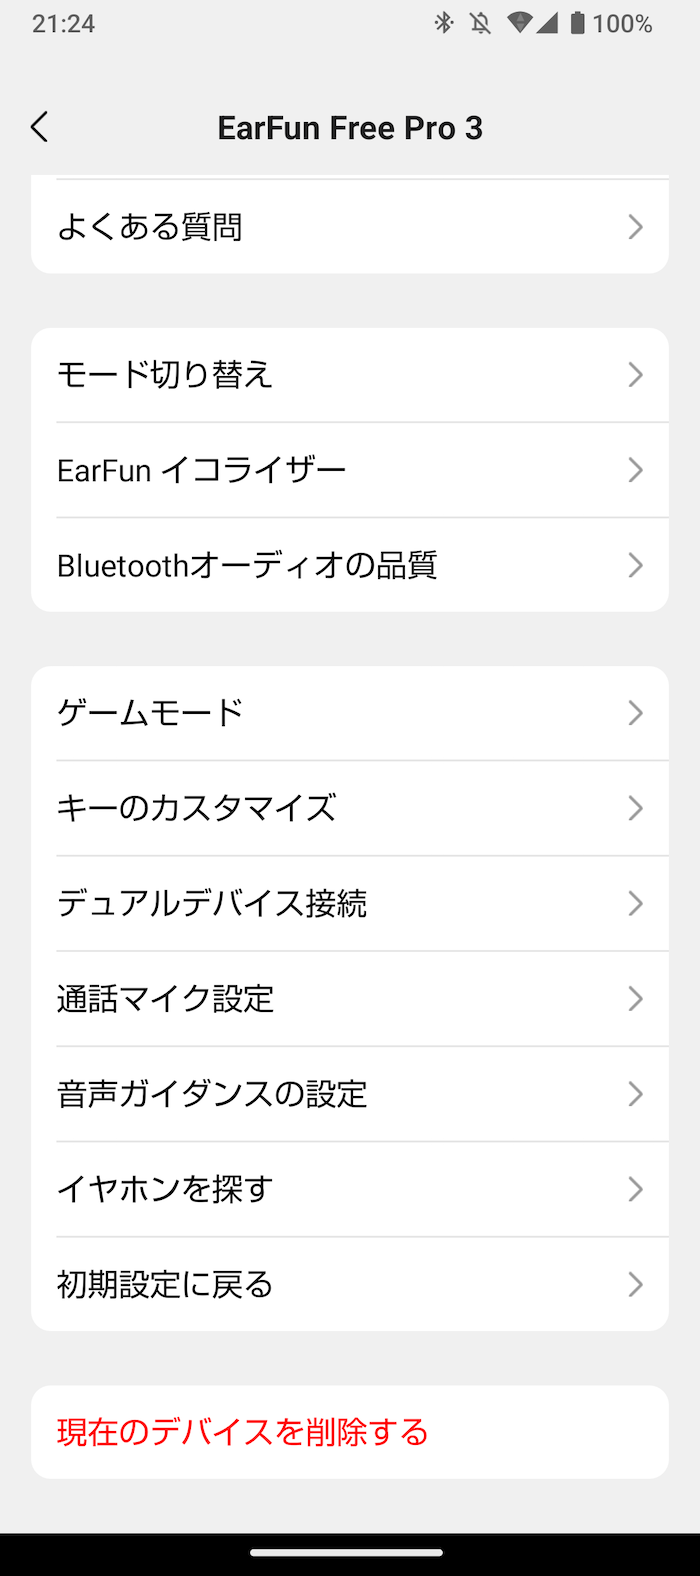 EarFun Free Pro 3のコンパニオンアプリ「EarFun Audio」